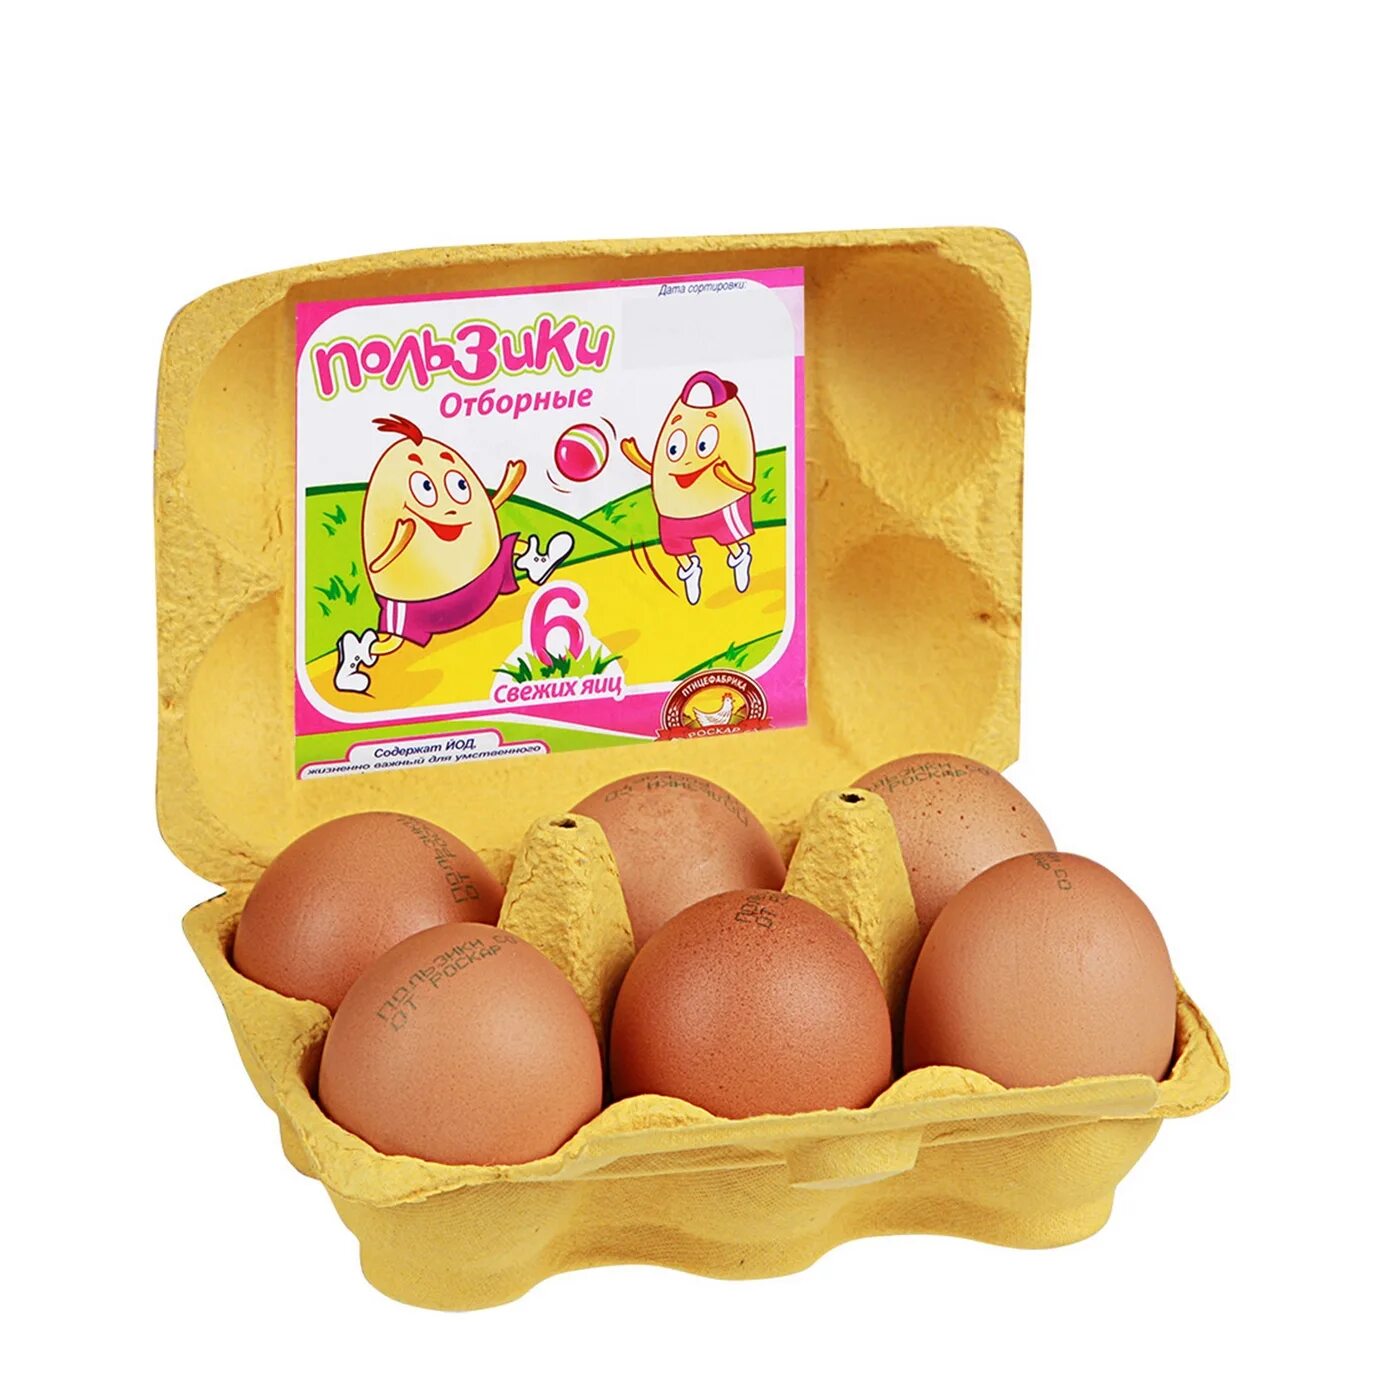 Купить 4 яйца. Яйца пользики. Пользики яйцо куриное с1 10шт. Упаковка для яиц. Яйца куриные в упаковке.